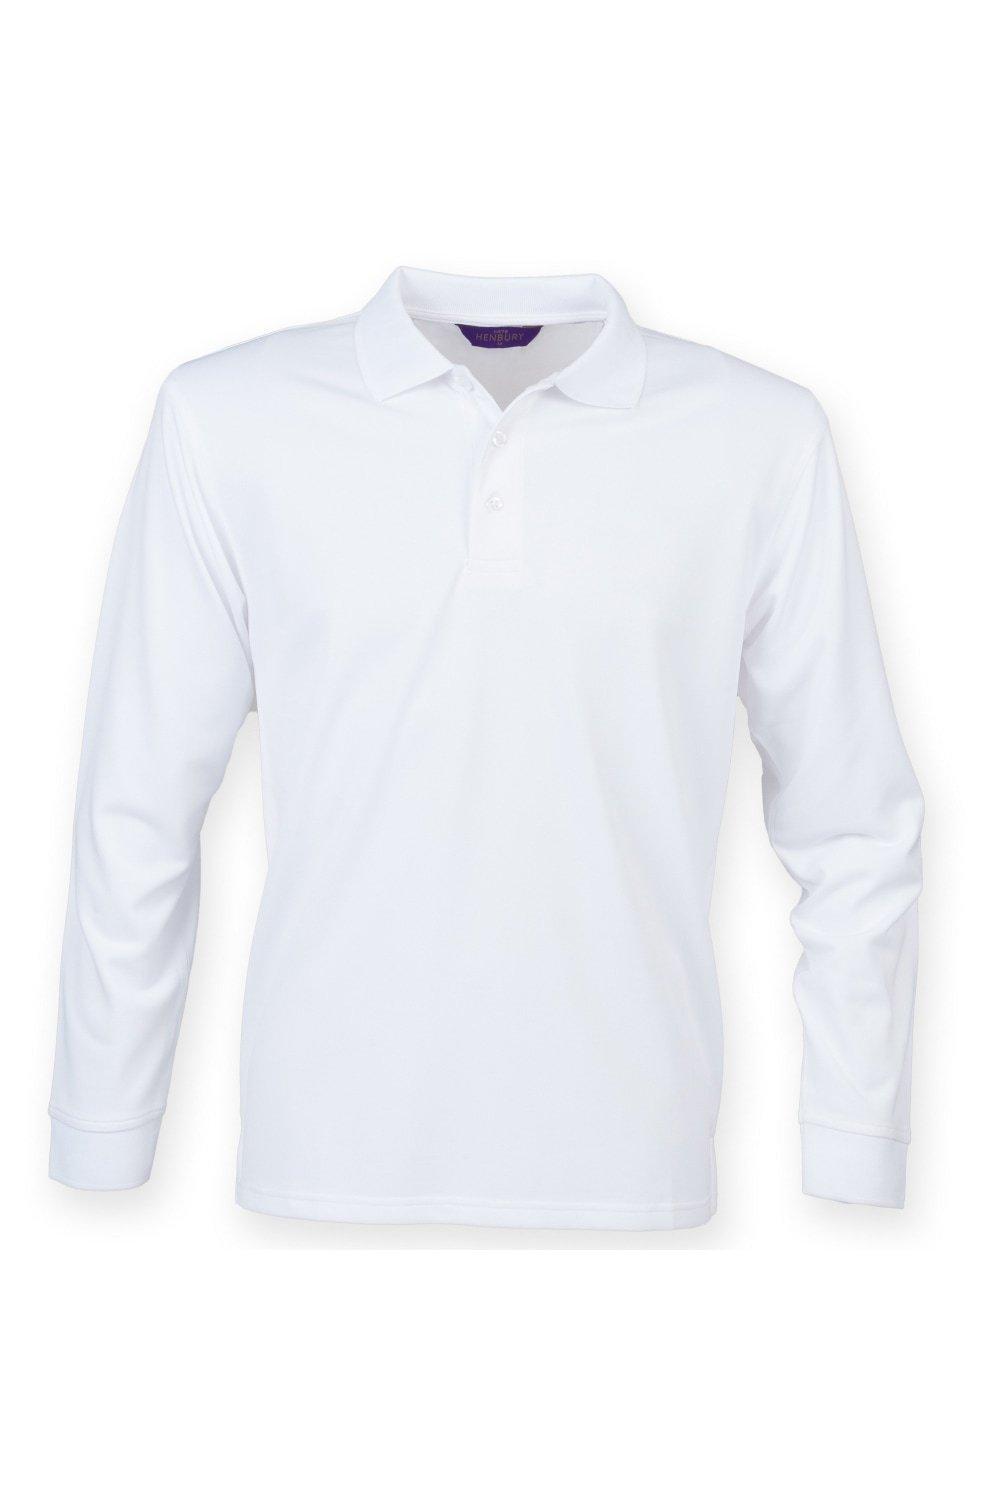 цена Влагоотводящая рубашка-поло с длинными рукавами Coolplus Henbury, белый